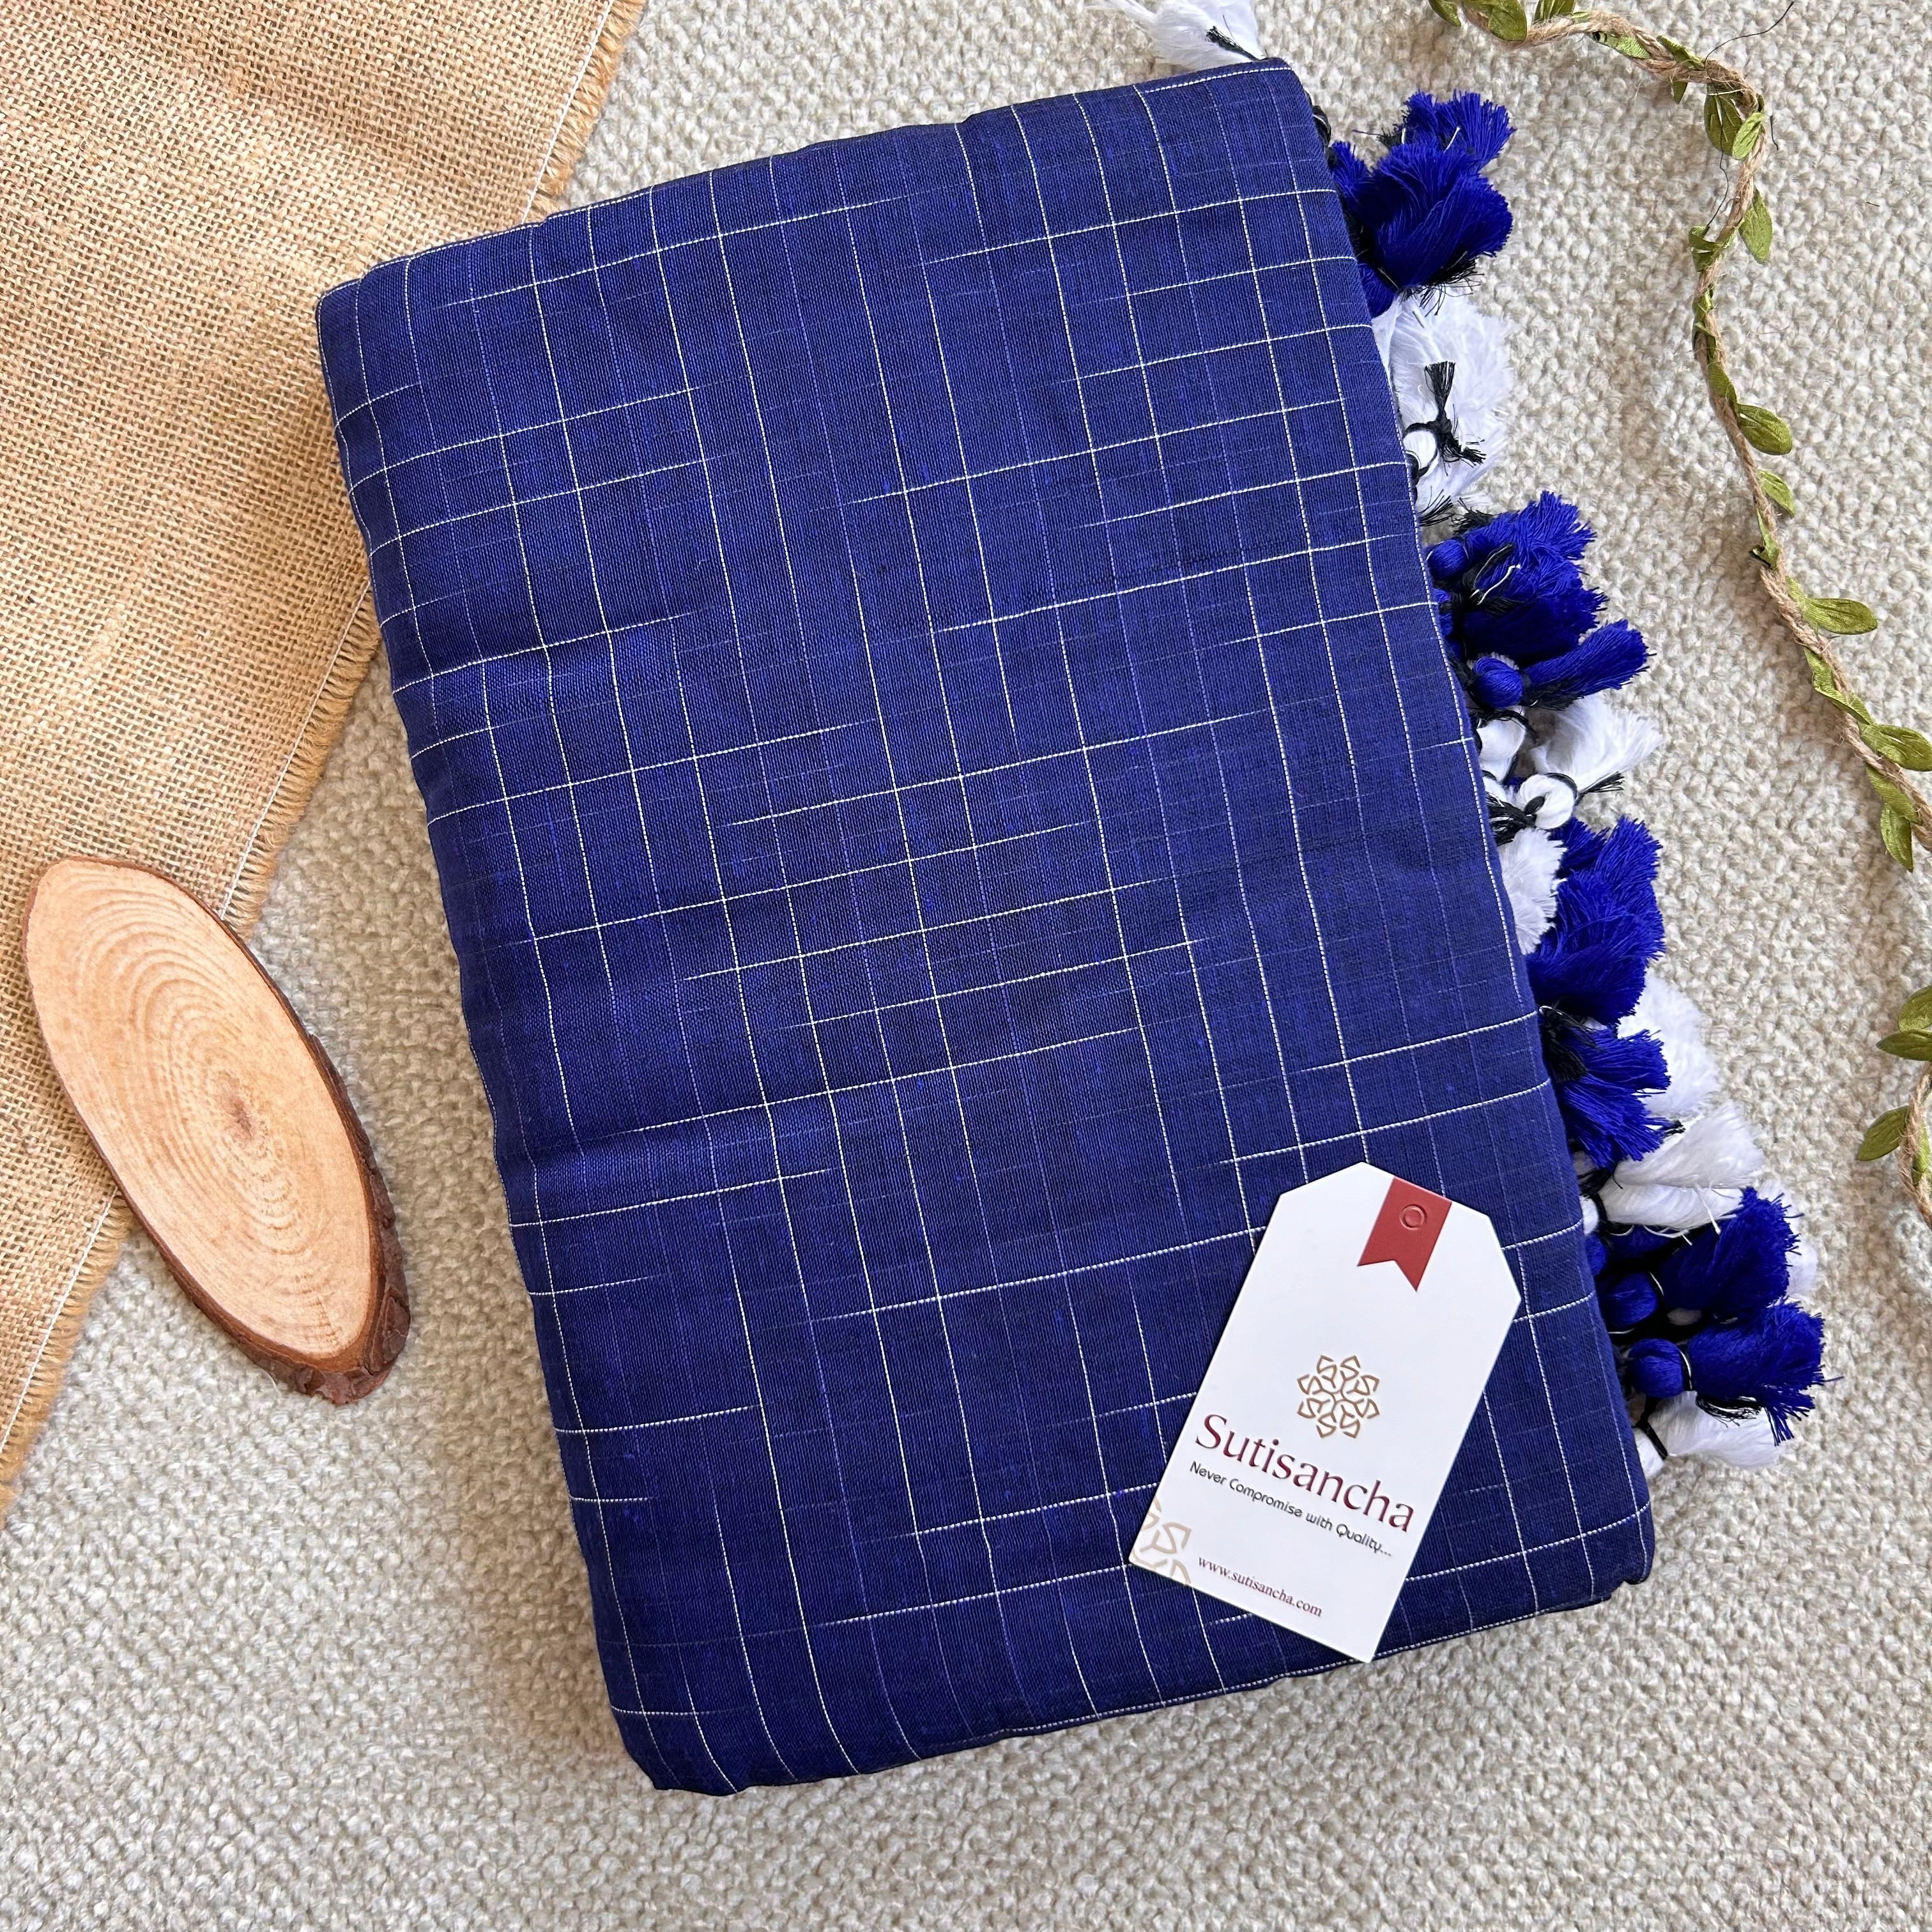 Sutisancha Blue Cotton Saree with Trendy Kotki Checks Design